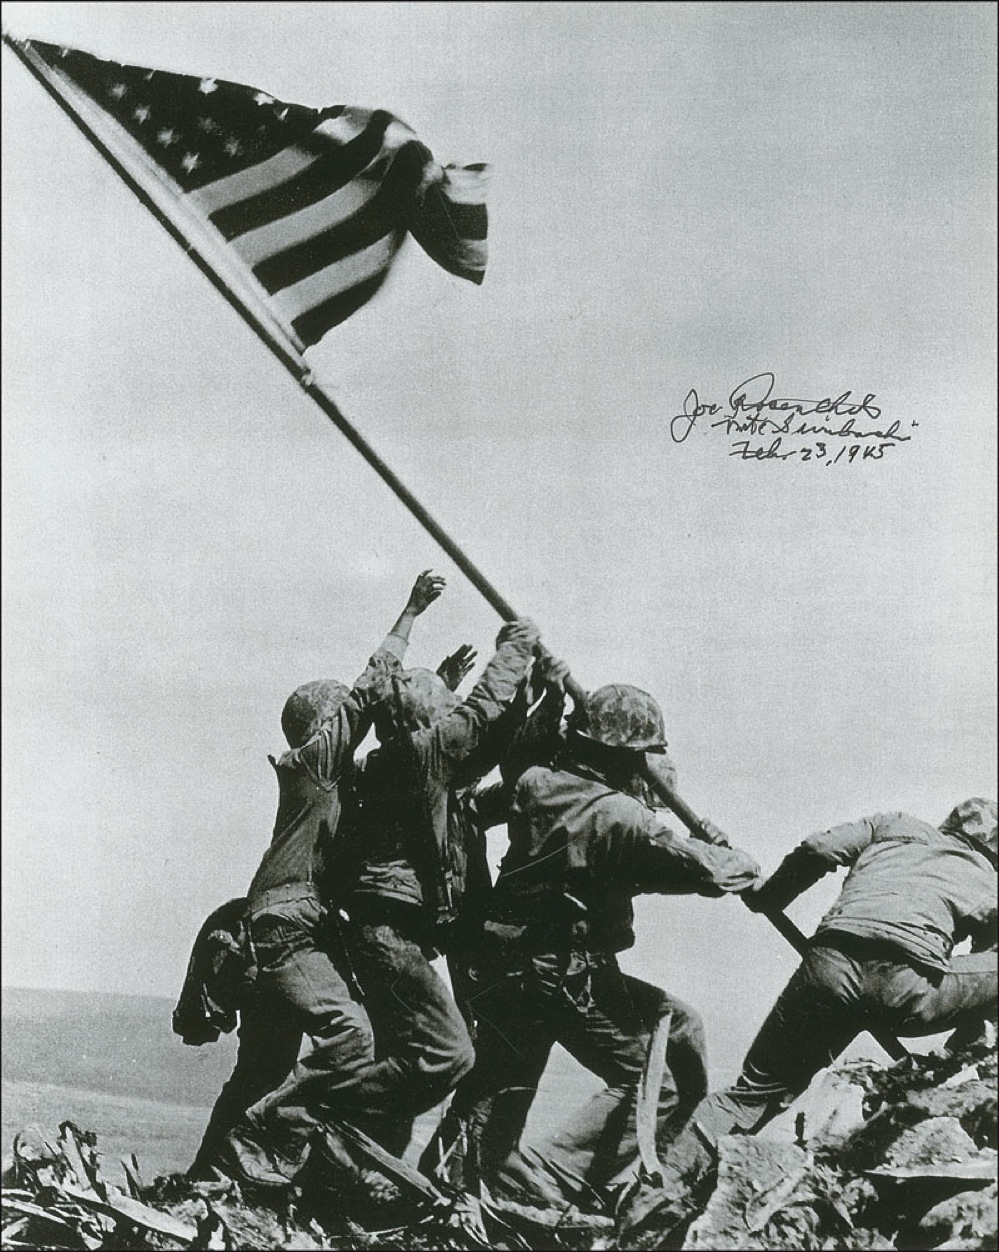 Lot #360 Iwo Jima: Joe Rosenthal